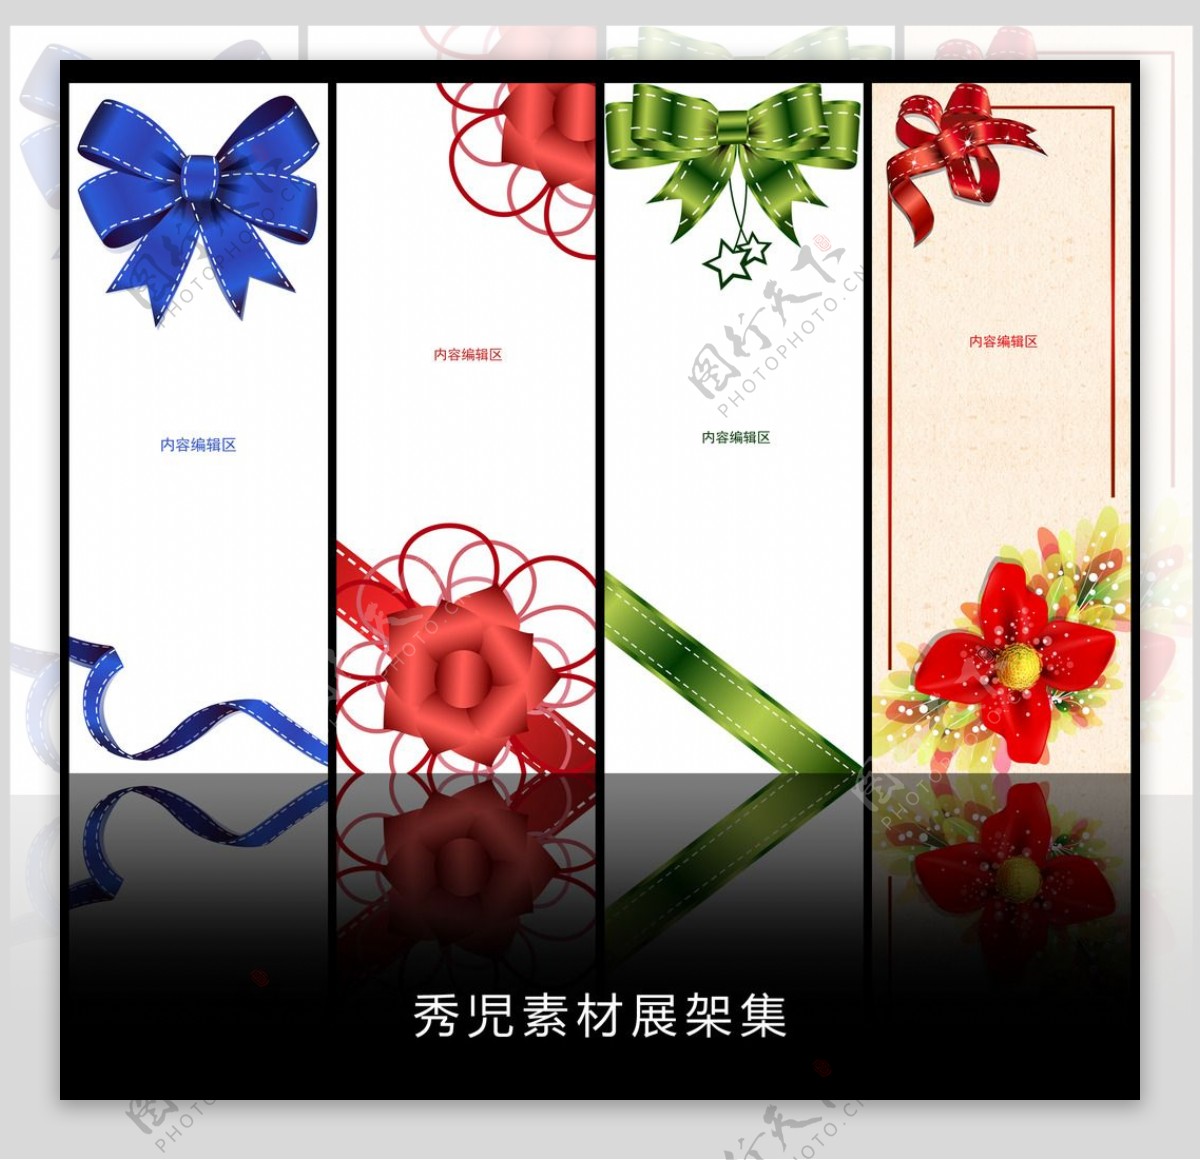 精美中国结展架设计模板画面素材